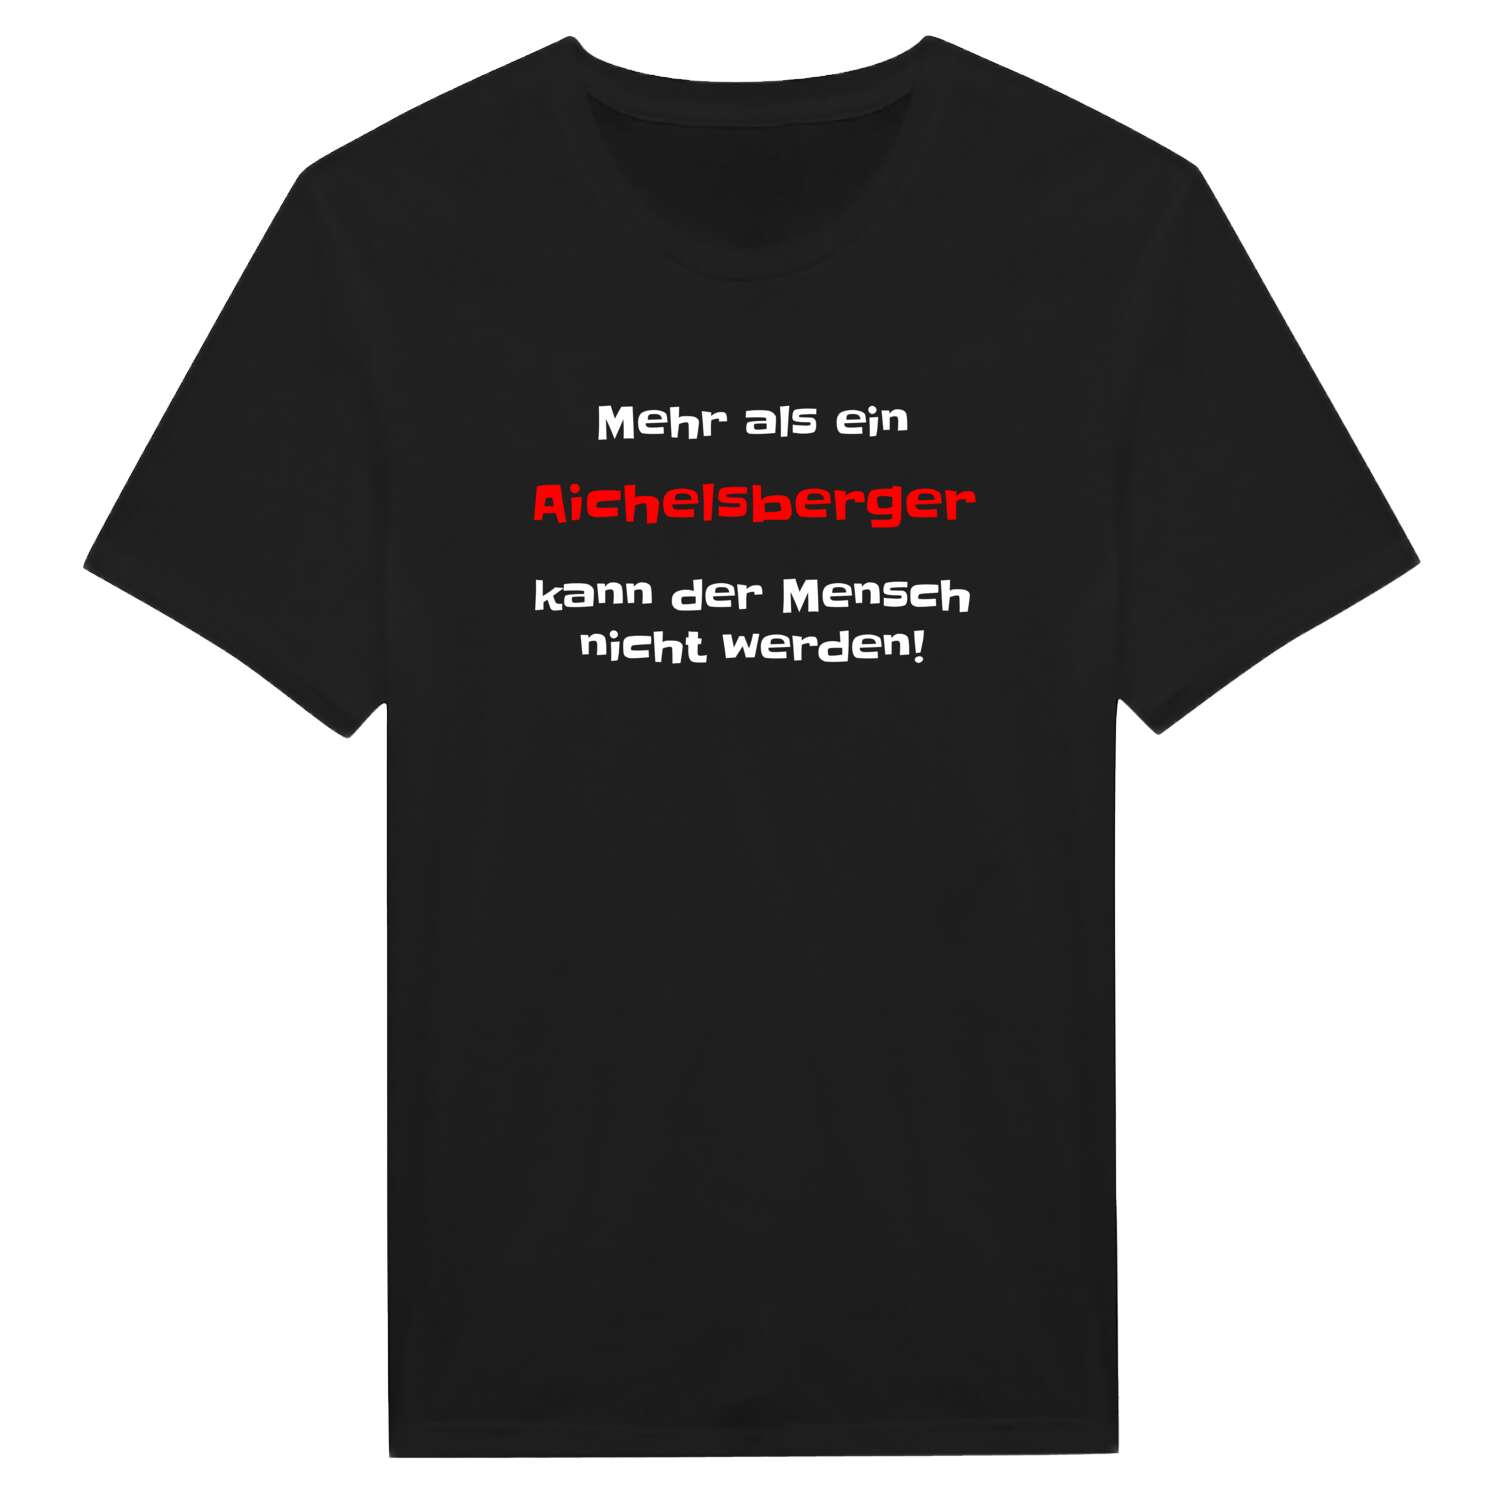 Aichelsberg T-Shirt »Mehr als ein«